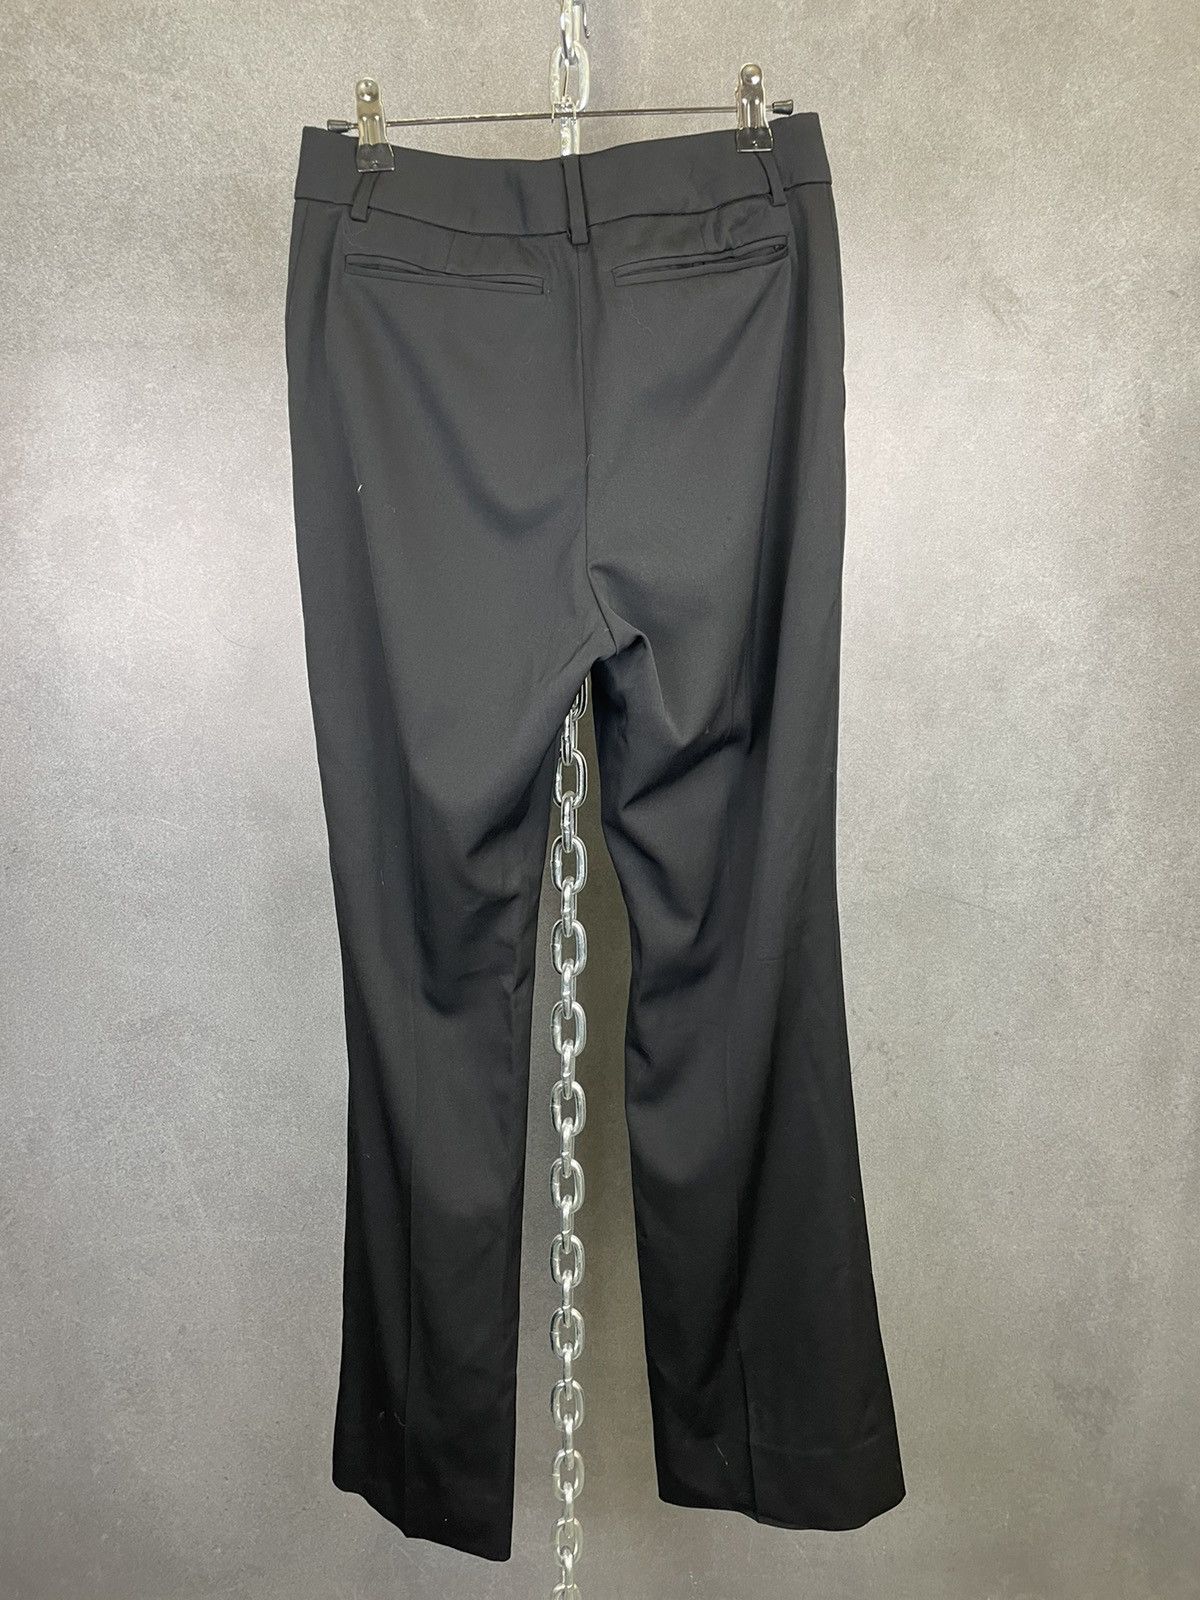 Yves Saint Laurent Vintage Yves Saint Laurent Black Wool Trousers Size 28”x30” Size 28" / US 6 / IT 42 - 3 Thumbnail